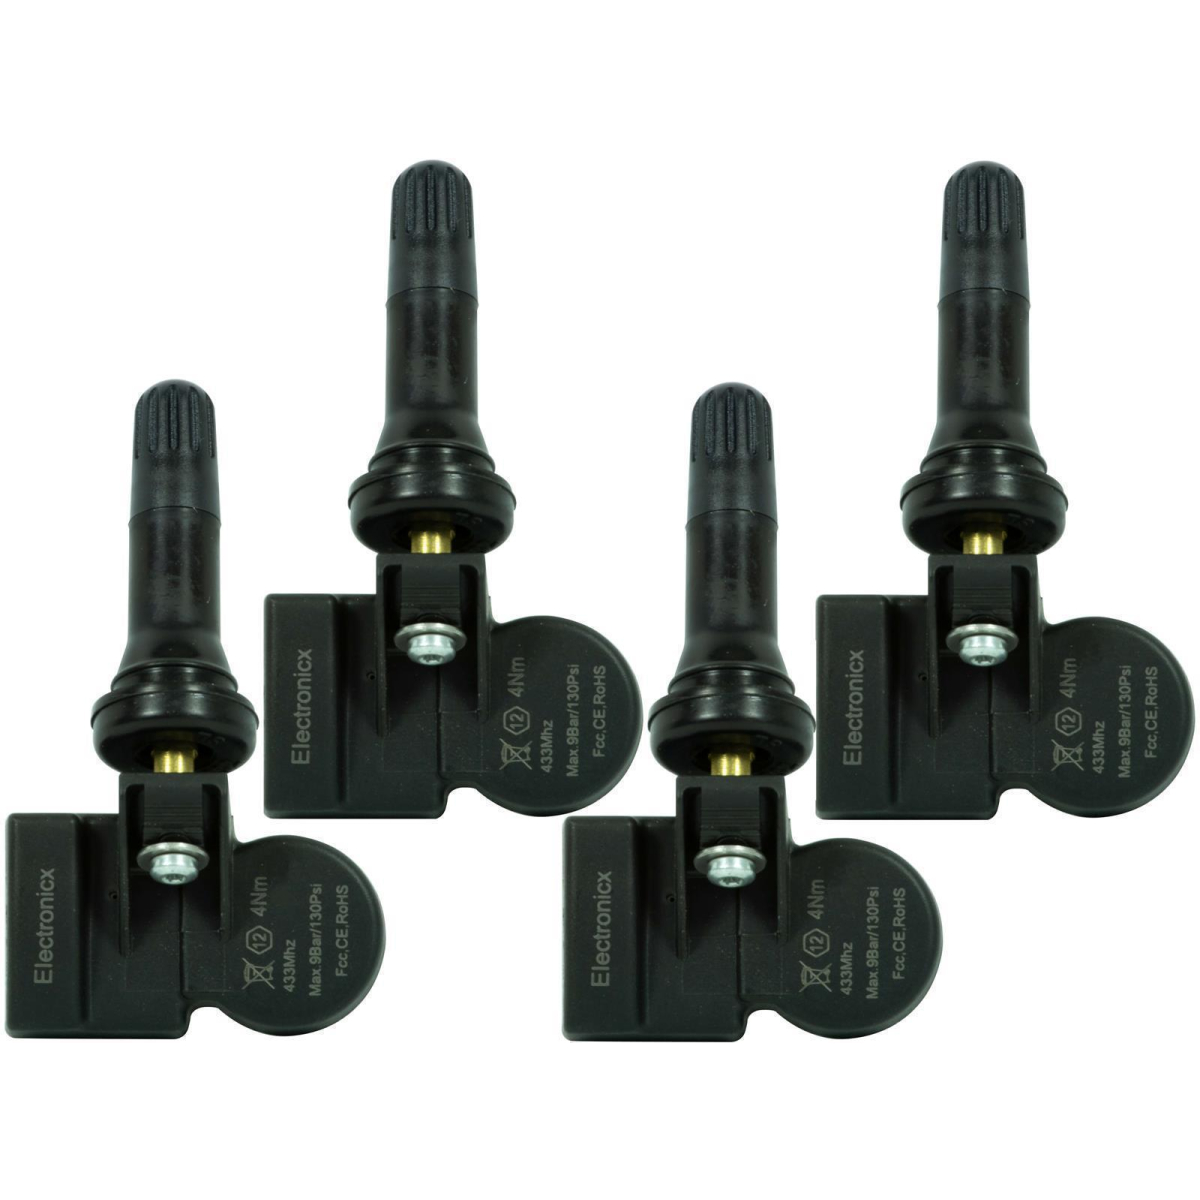 4 tire pressure sensors rdks sensors rubber valve for Opel/Vauxhall Vectra Estate 06.2009-06.2014